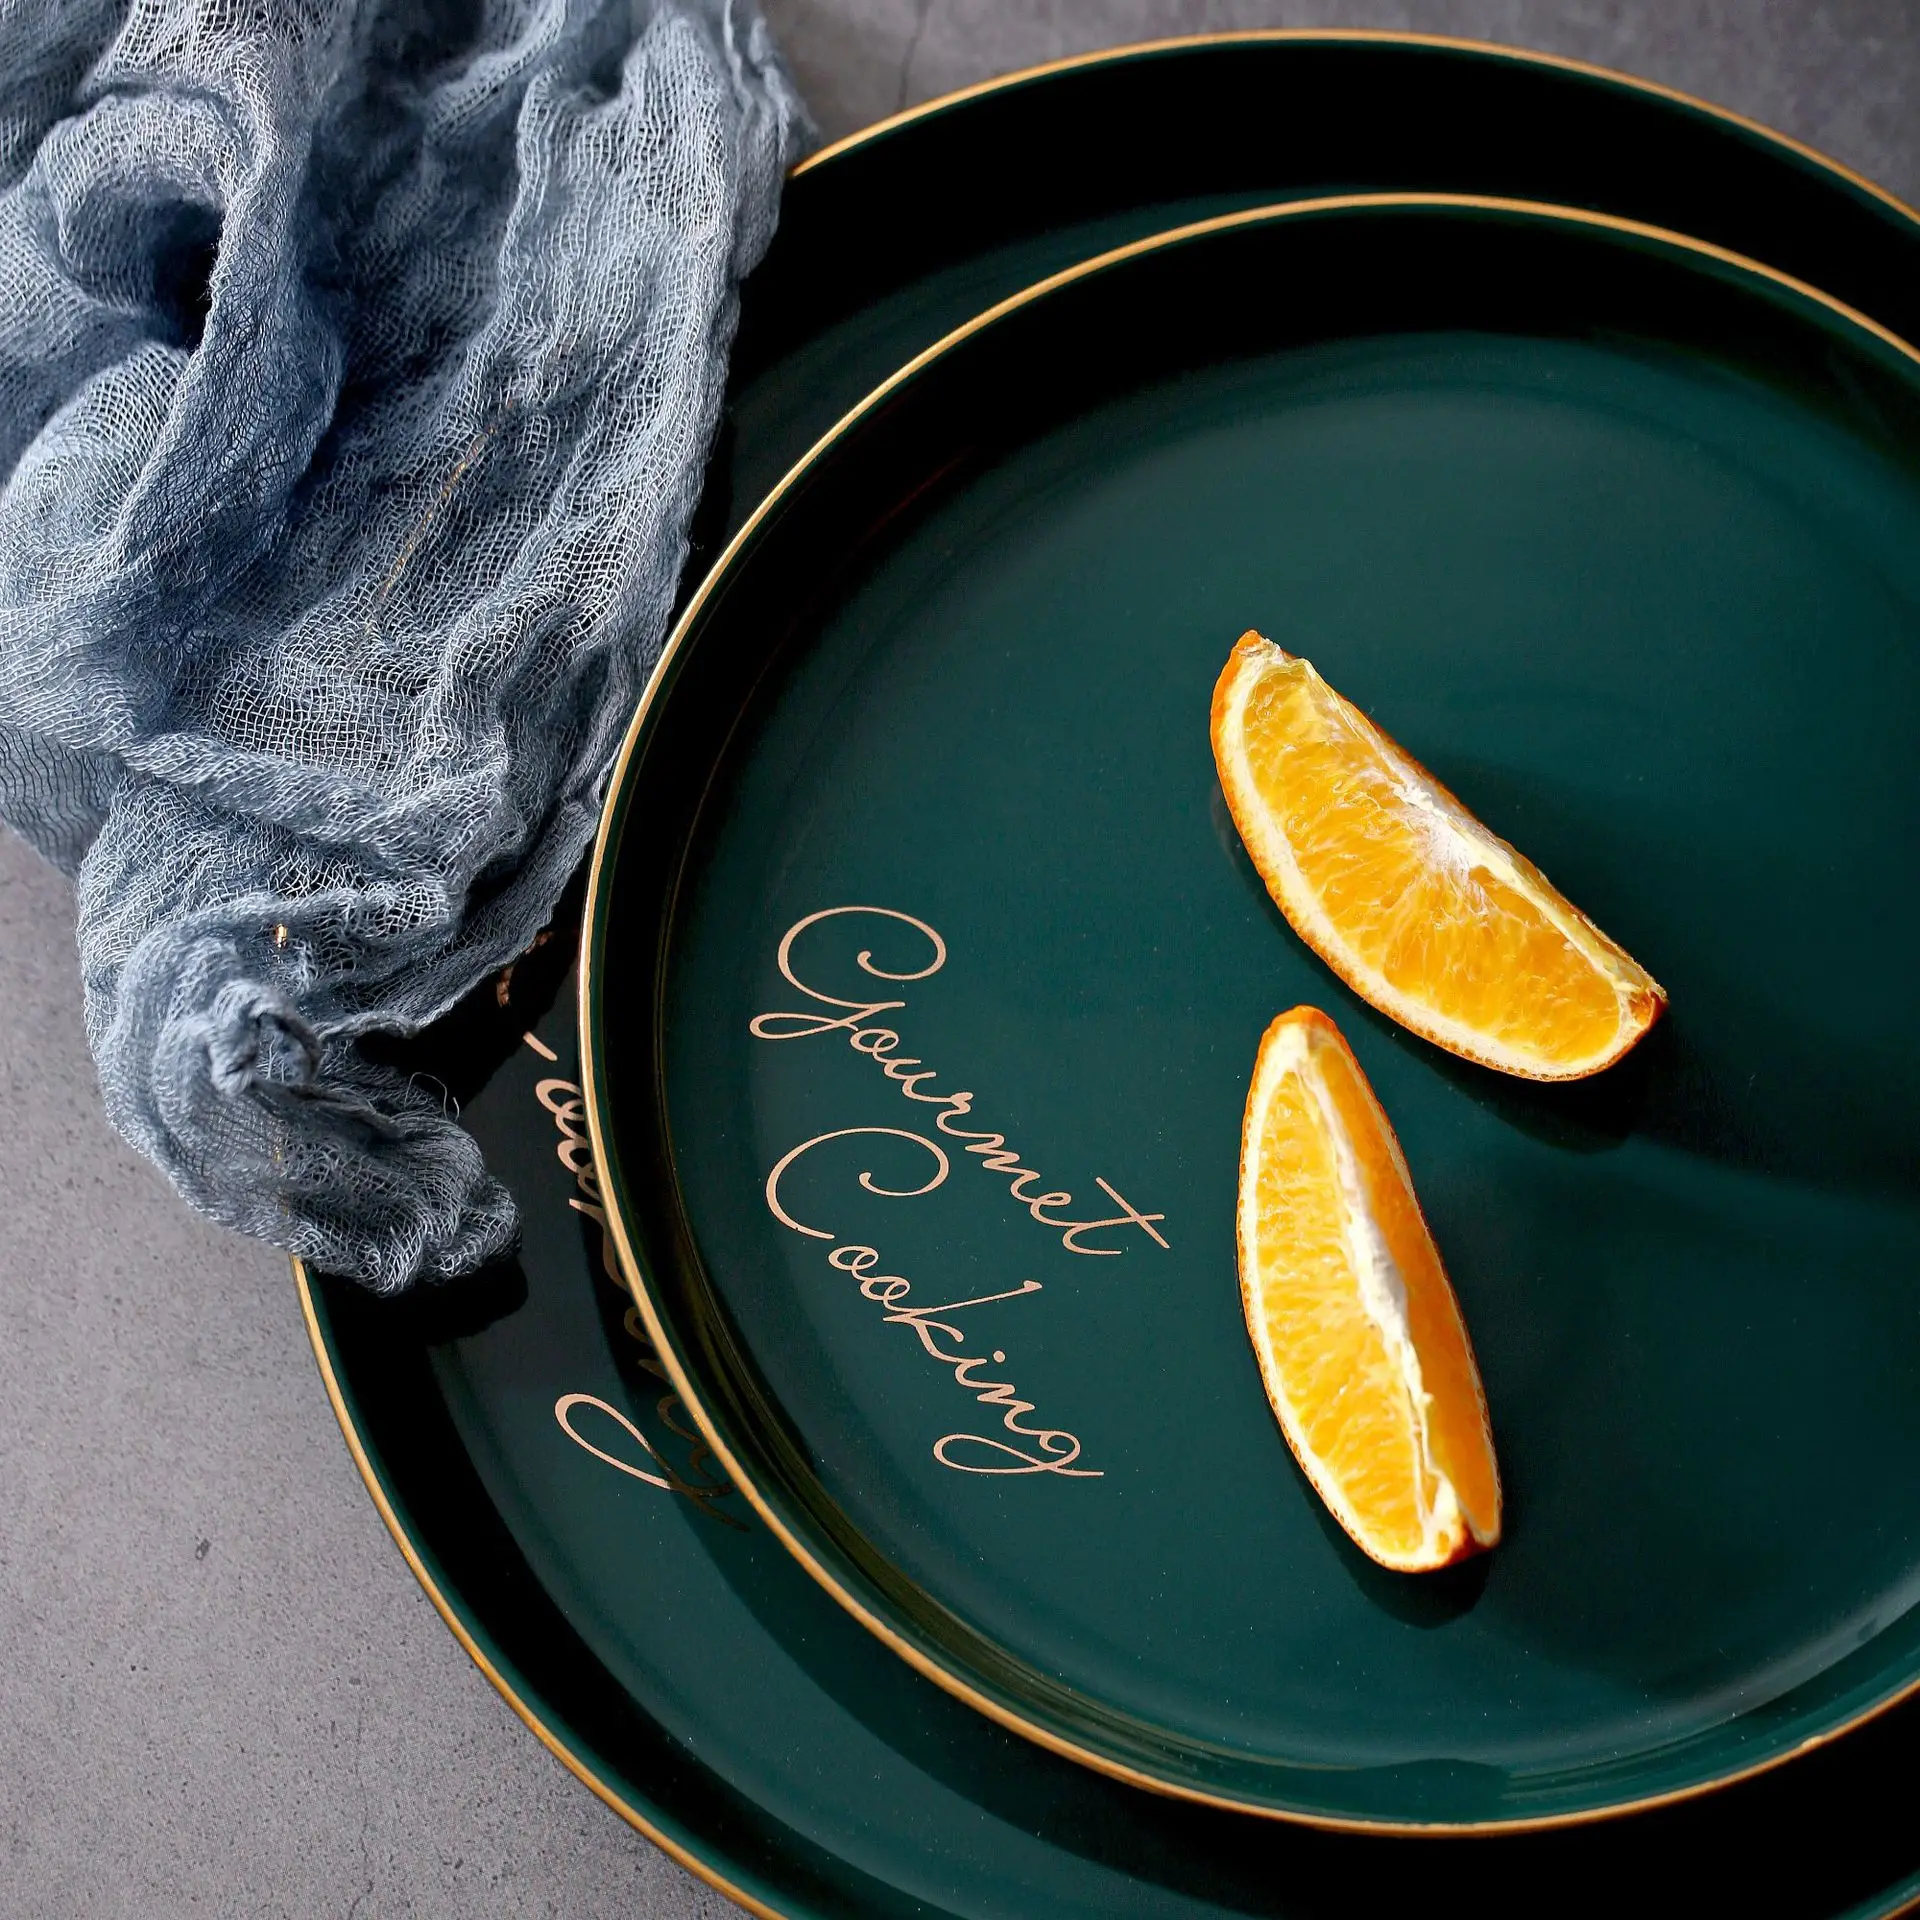 Nordic золотой край Керамика пластина зеленого цвета серьги с круглым камнем бытовой ужин неглубокая тарелка десерт лоток завтрак фруктовый посуда для пирожных пластина